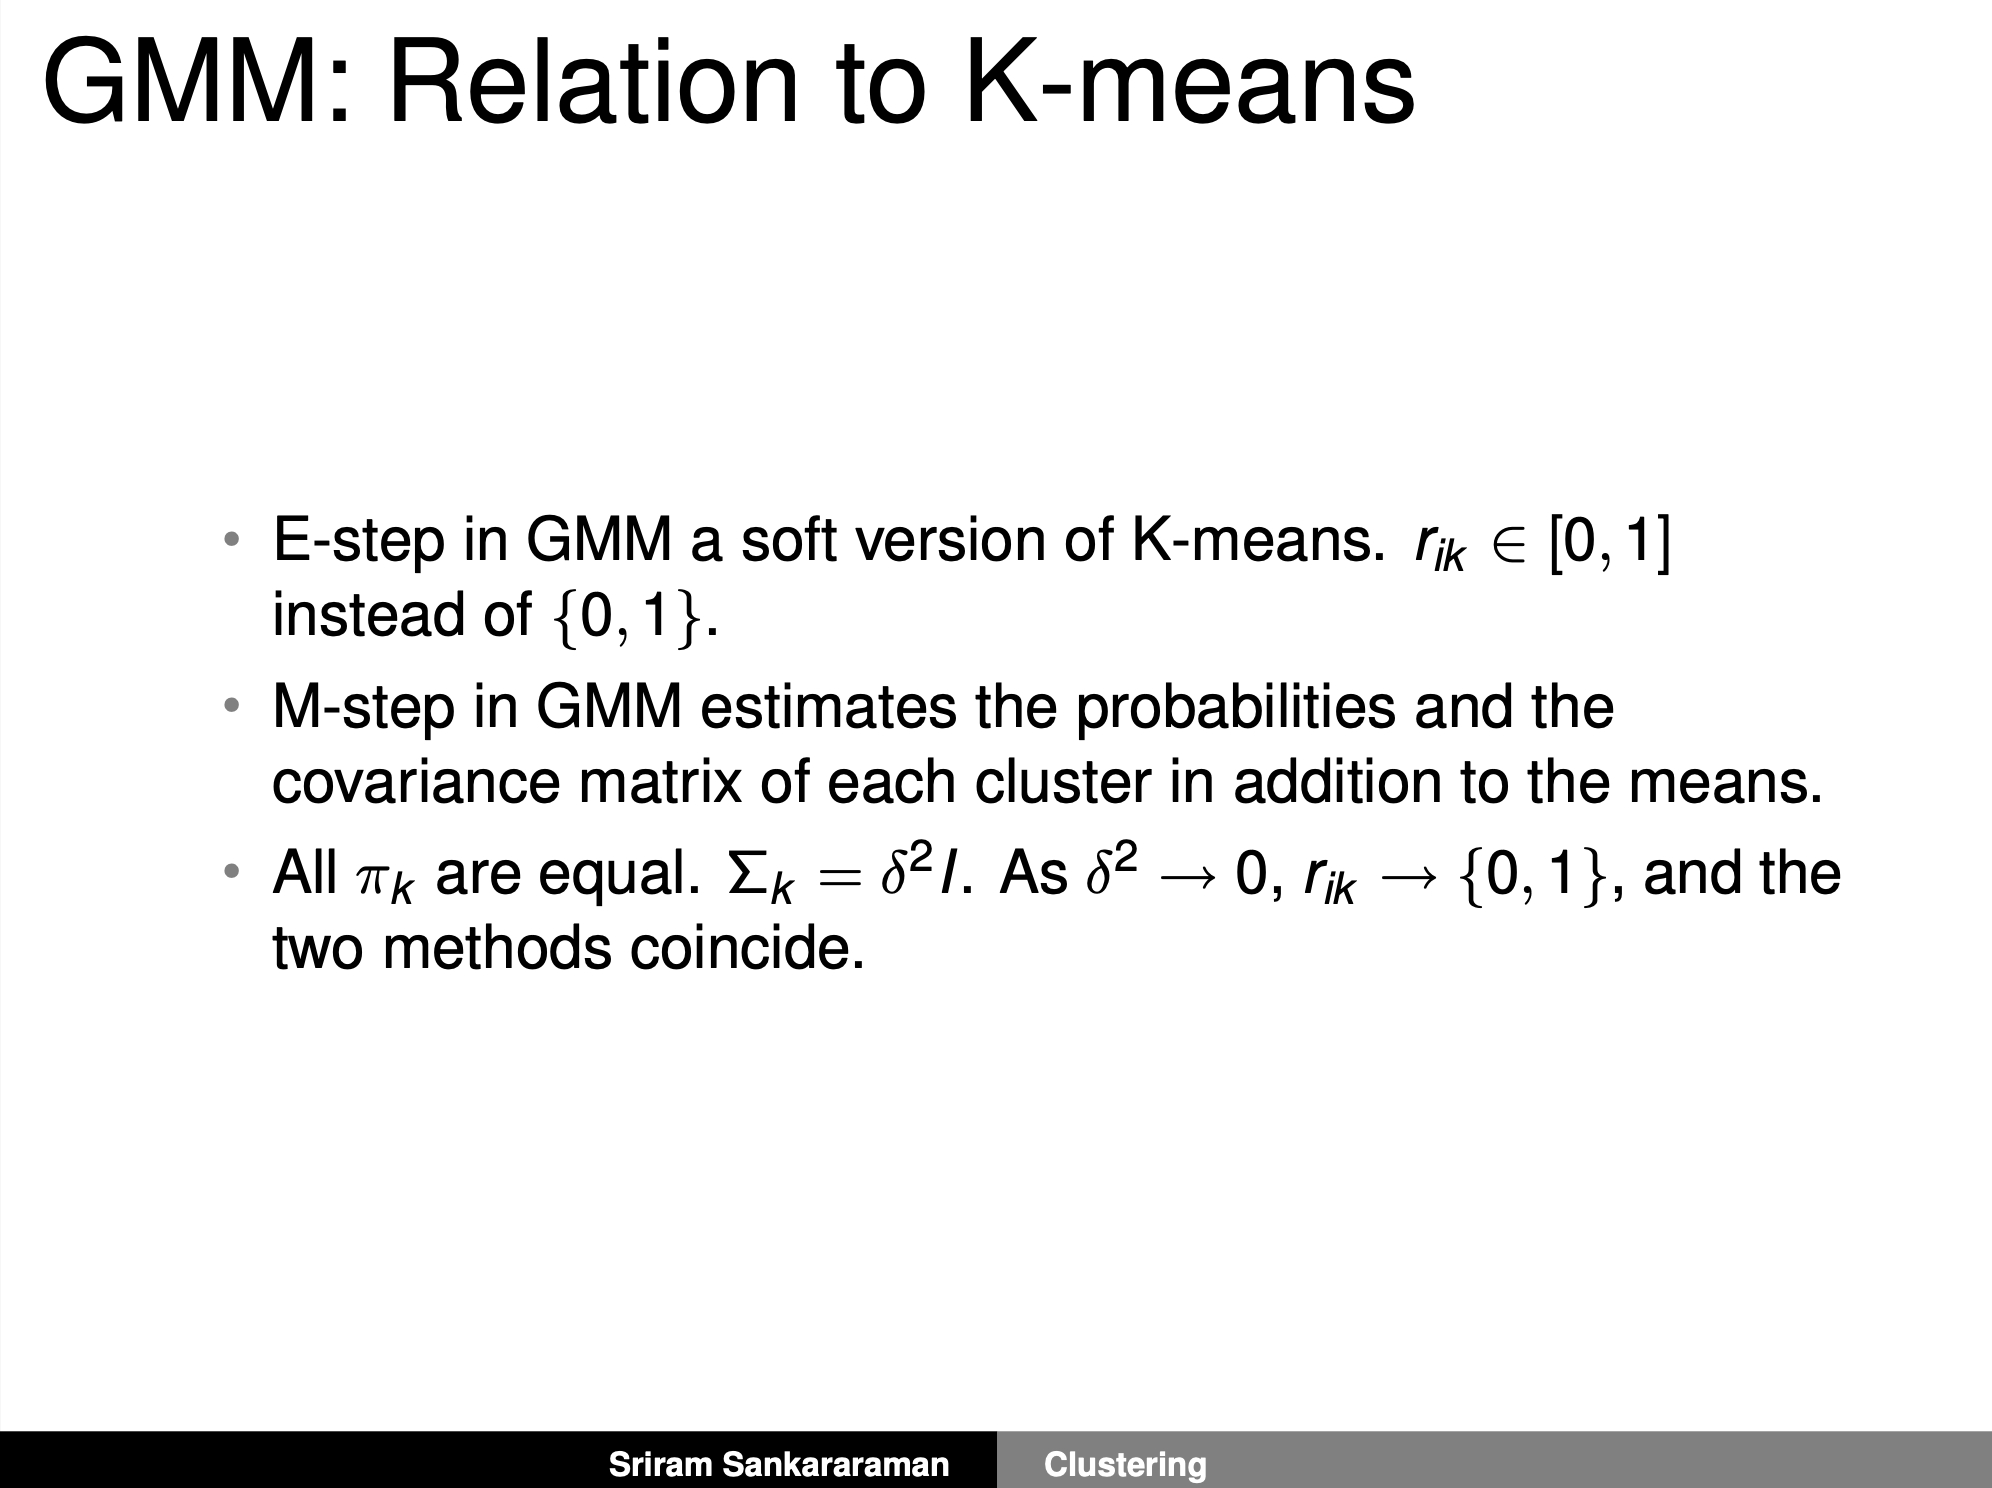 gmm_vs_kmeans_fig3